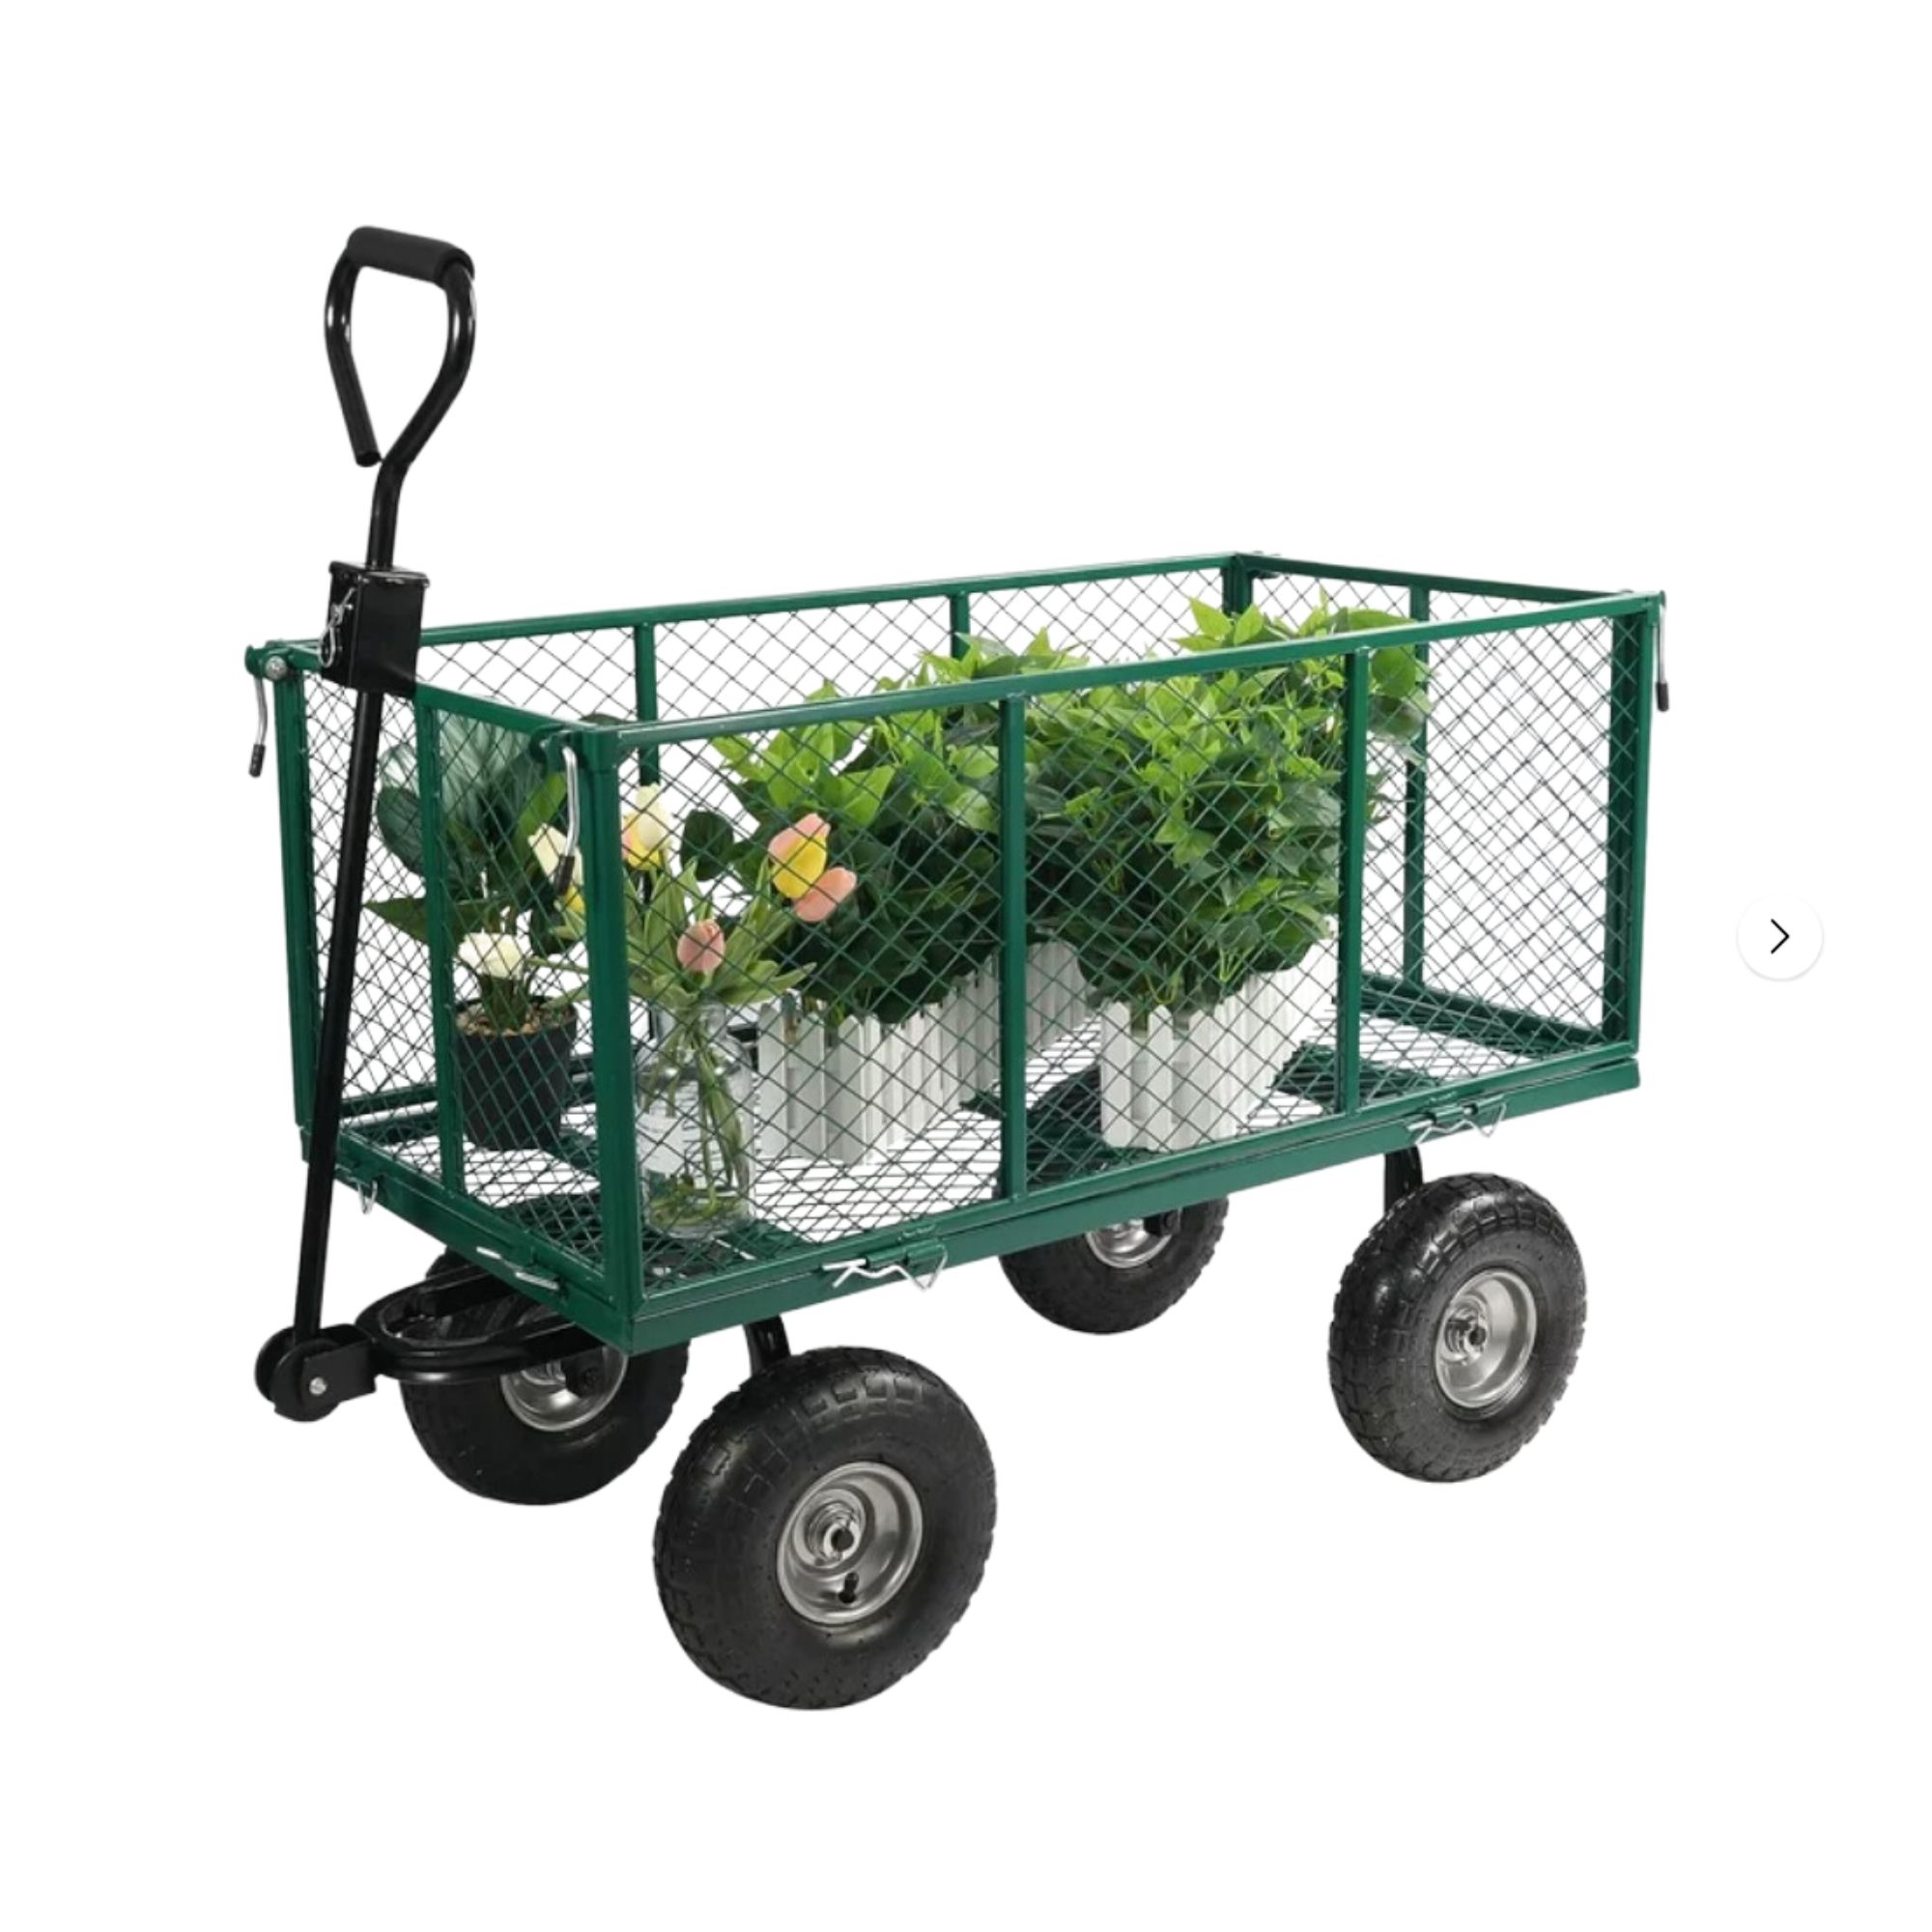 Green metal gardening cart